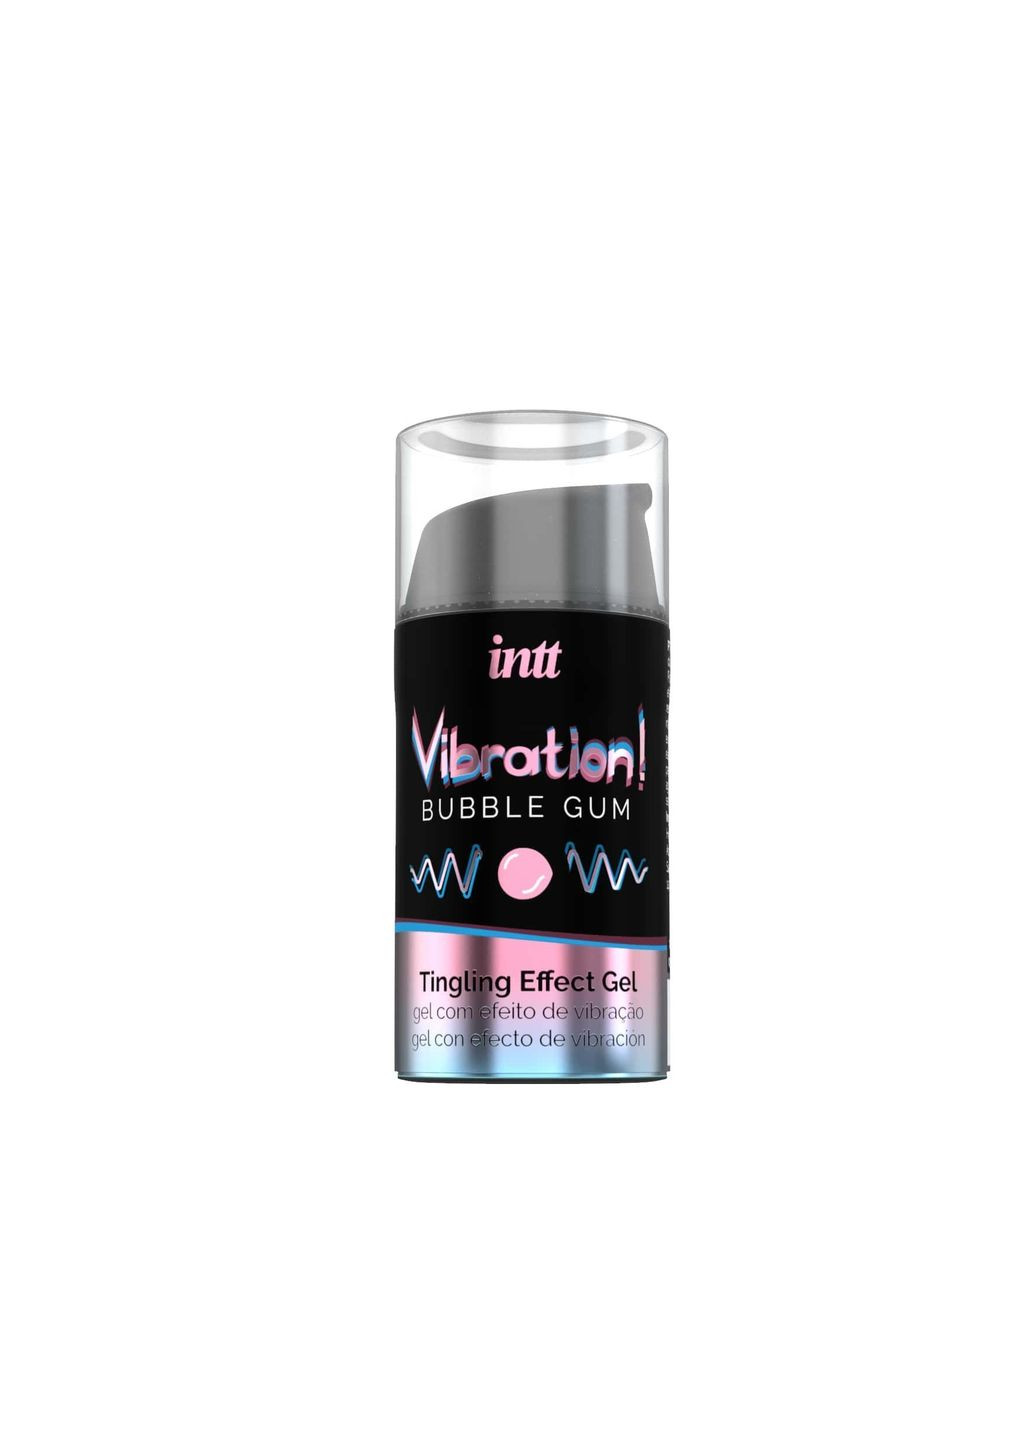 Жидкий вибратор Vibration Bubble Gum 15 мл густой гель, вкусный, действует до 30 минут CherryLove Intt (282708861)